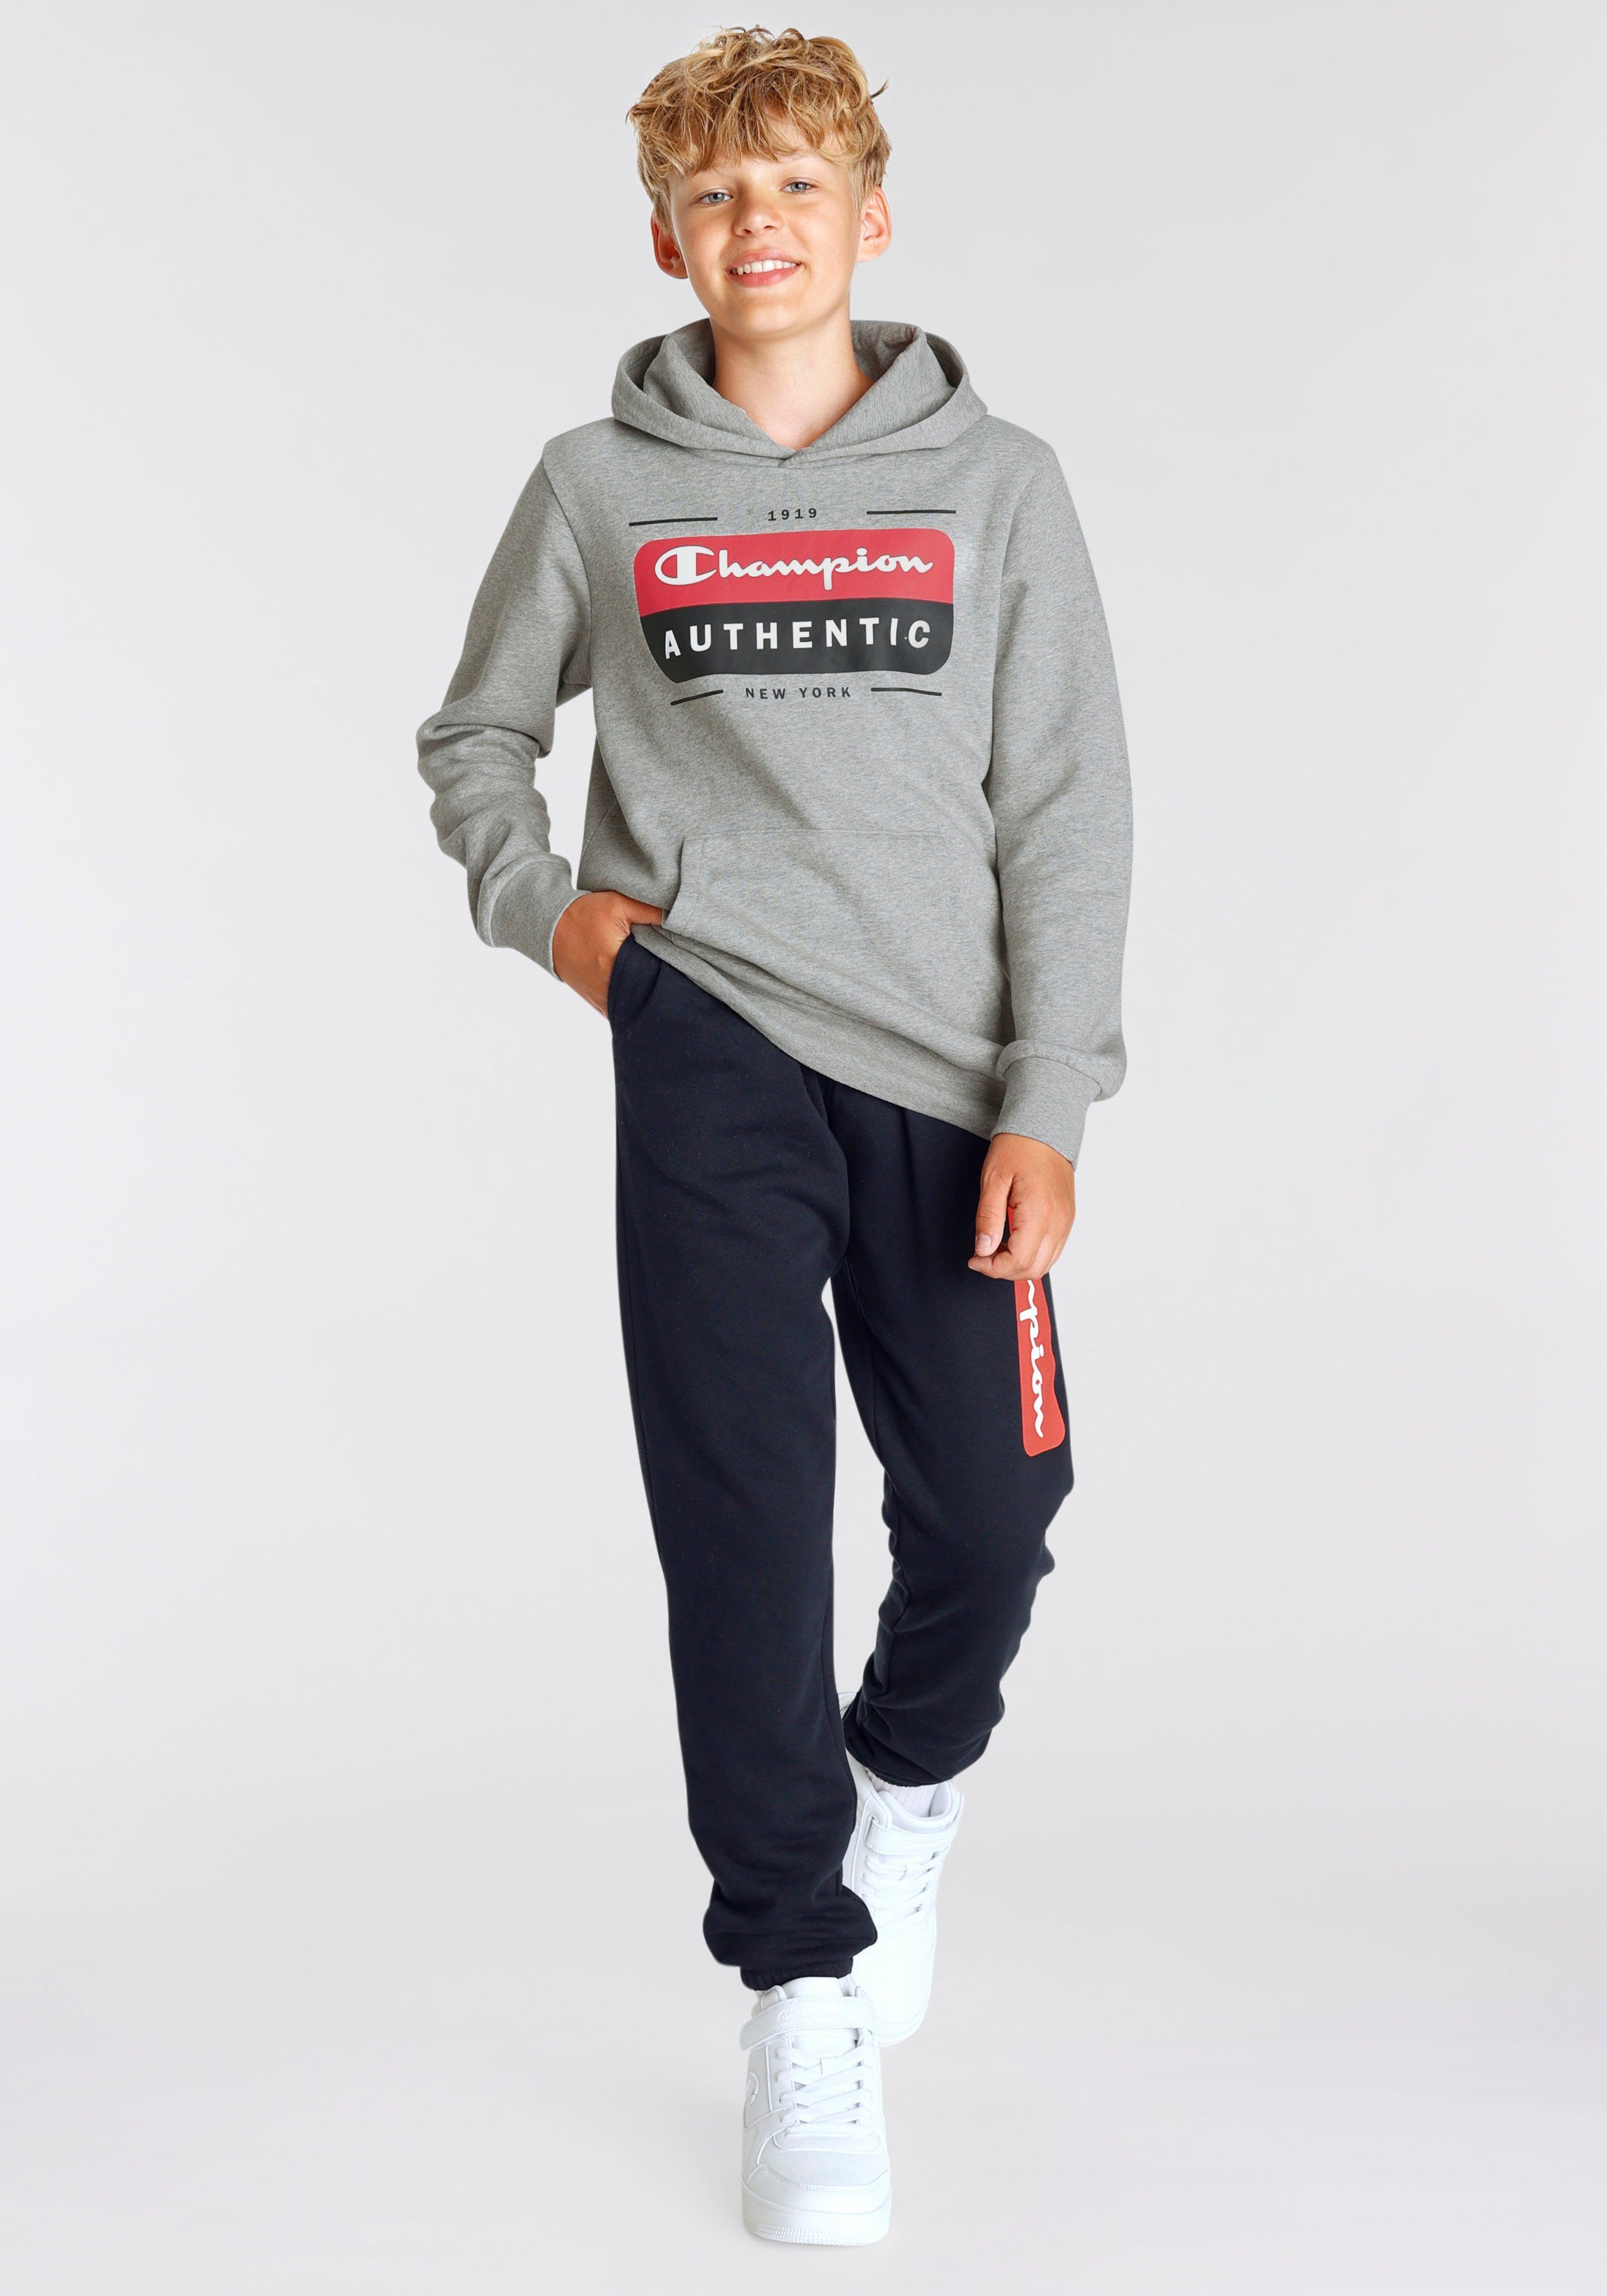 Sweatshirt Hooded Shop - Kinder für grau Champion Graphic Sweatshirt